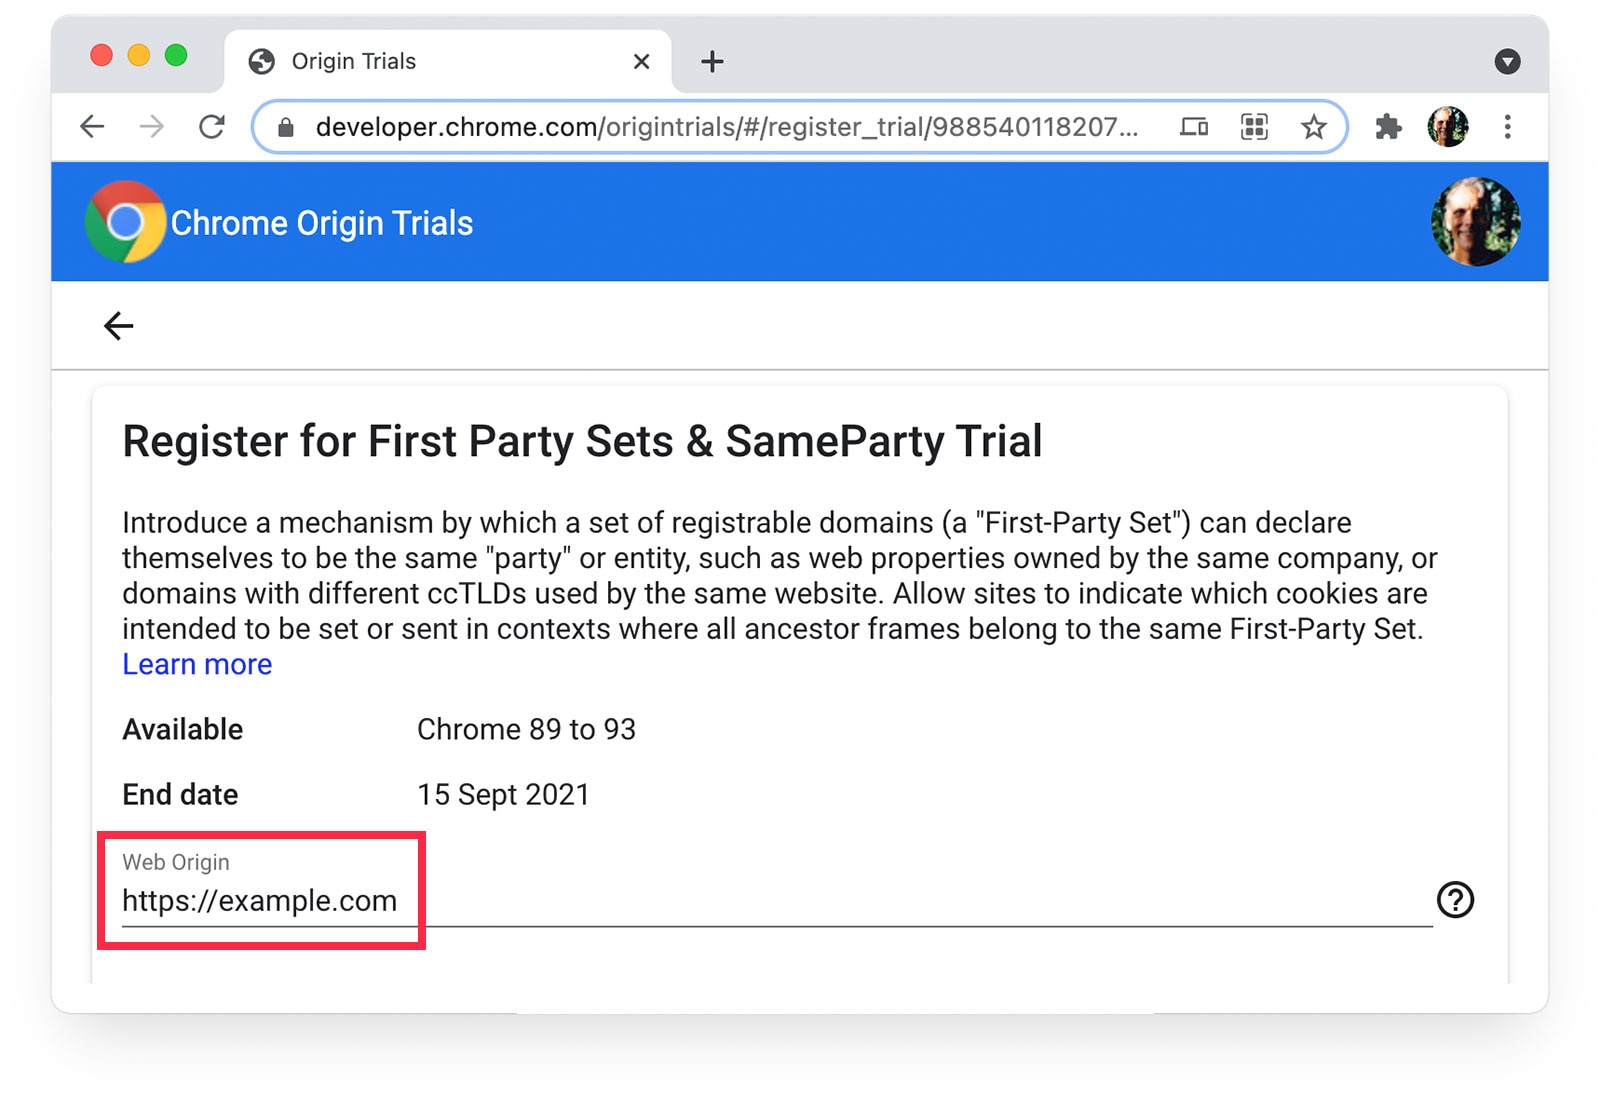 Pruebas de origen de Chrome 
página que muestra https://example.com seleccionada como Origen web